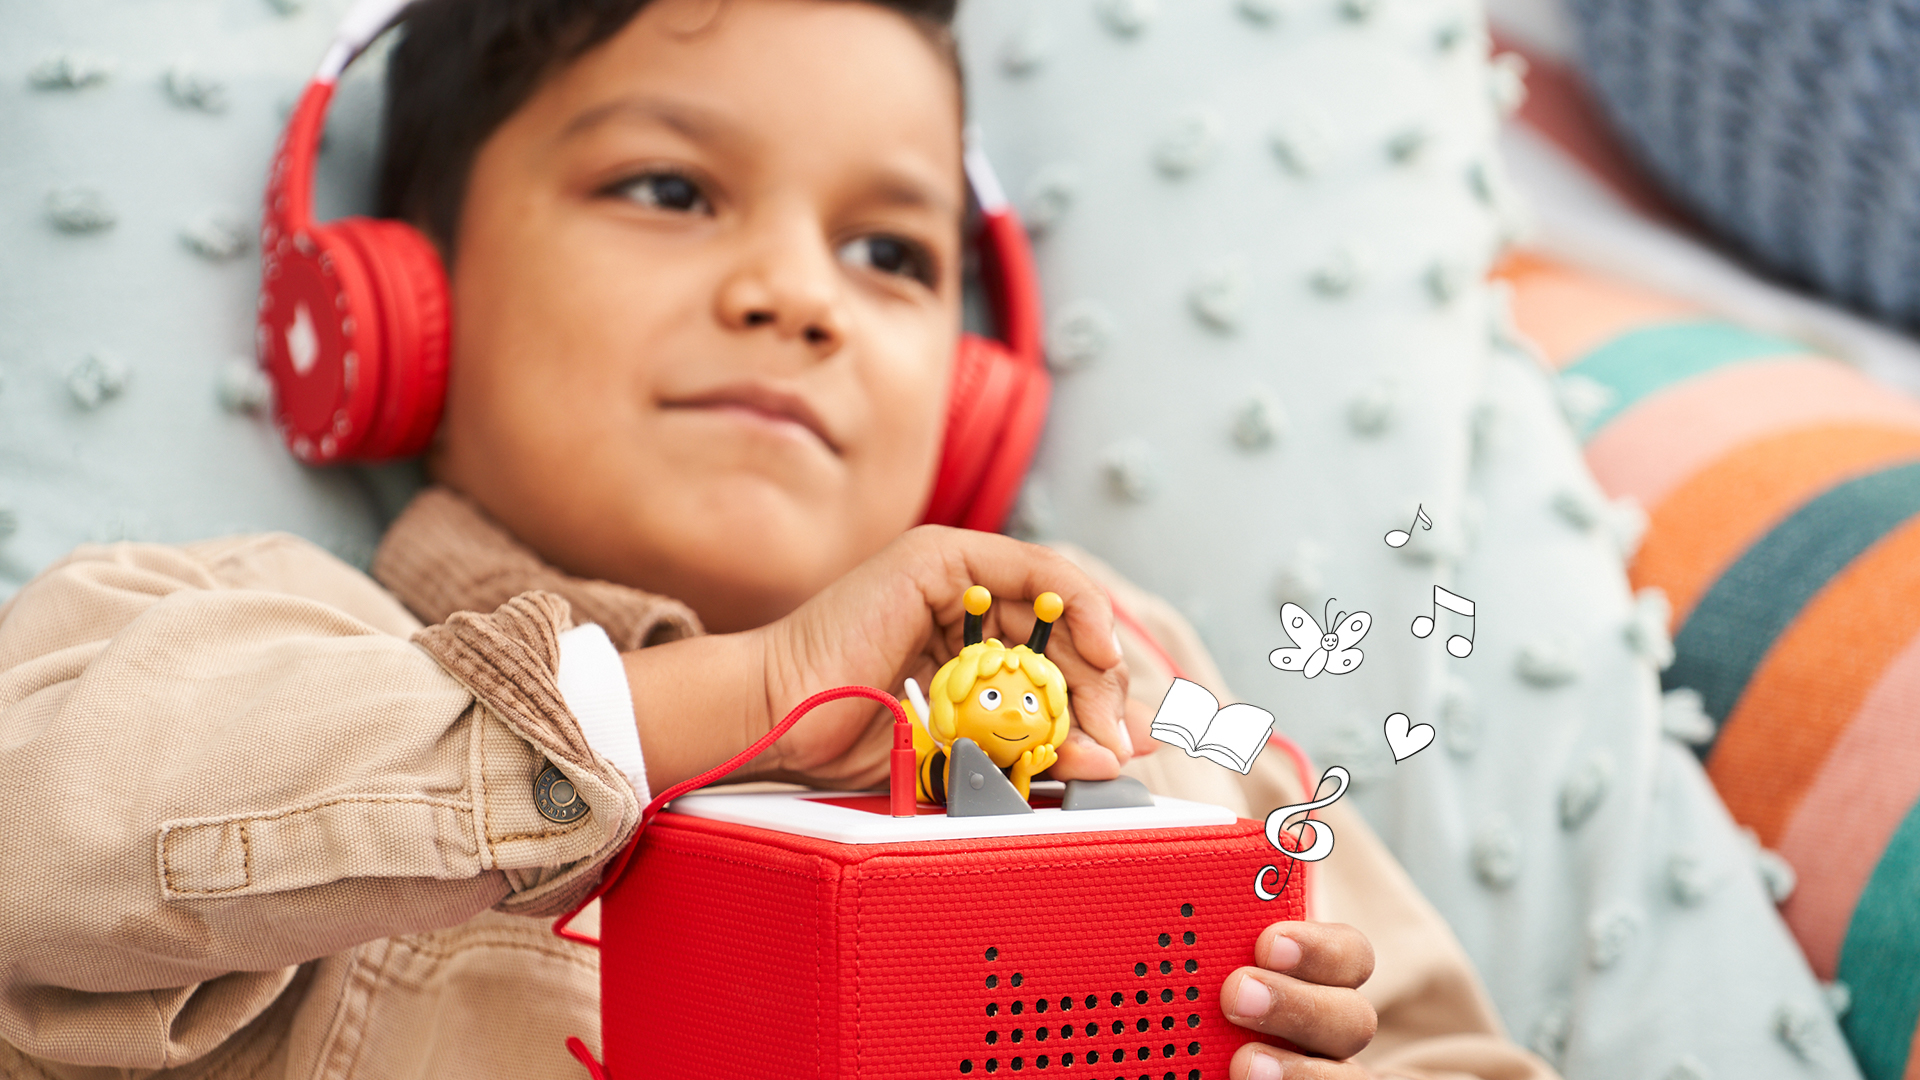 tonies Personnage audio pour Toniebox Creative Grey - Figurine avec espace  pour jusqu'à 90 minutes de contenu pour enfants - À utiliser avec le